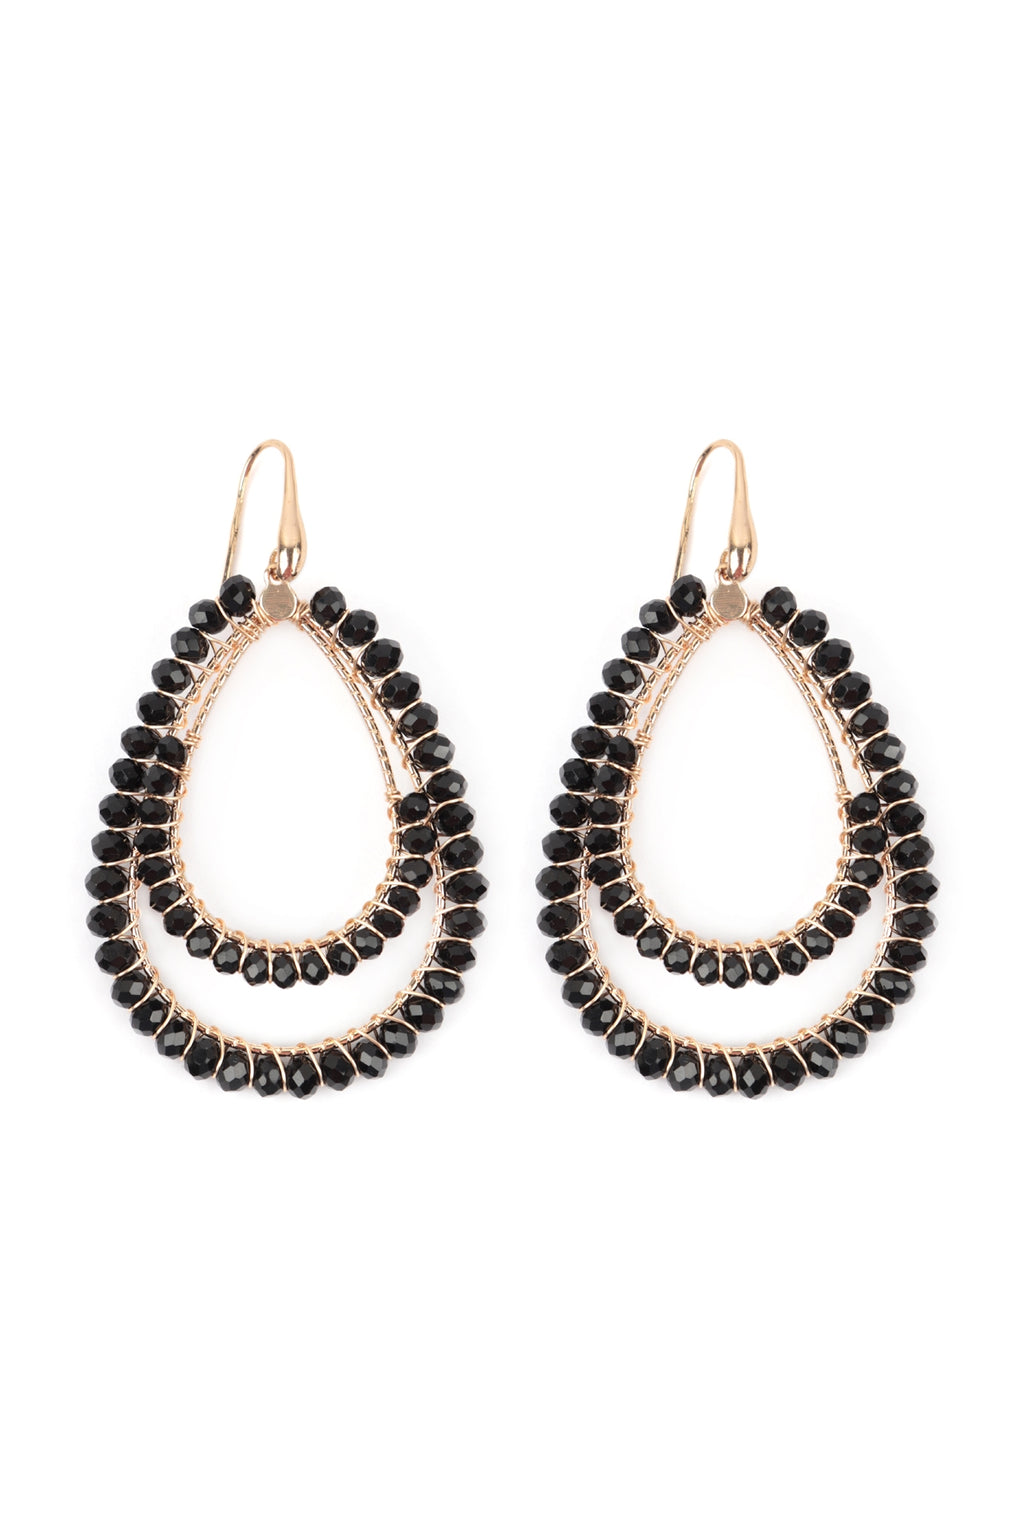 Boho Layered Rondelle Beads Teardrop Hook Earrings Black - Pack of 6